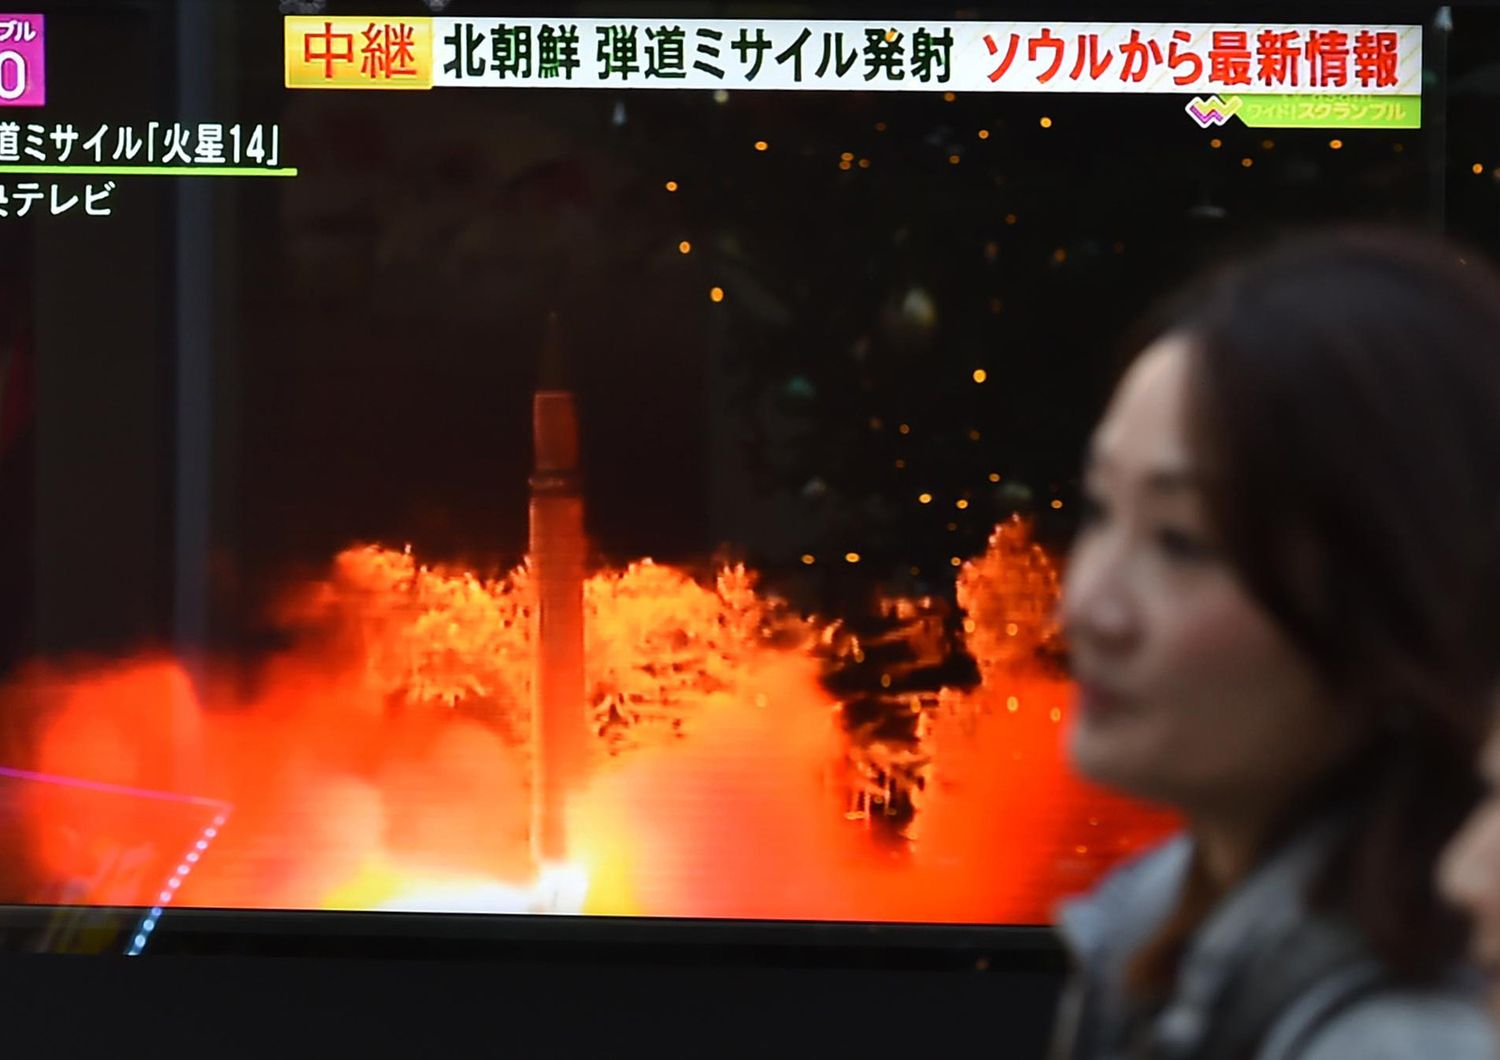 &nbsp;Le immagini dell'esercitazione antimissile condotta in Corea del Sud dopo il lancio del missile balistico da parte della Corea del Nord